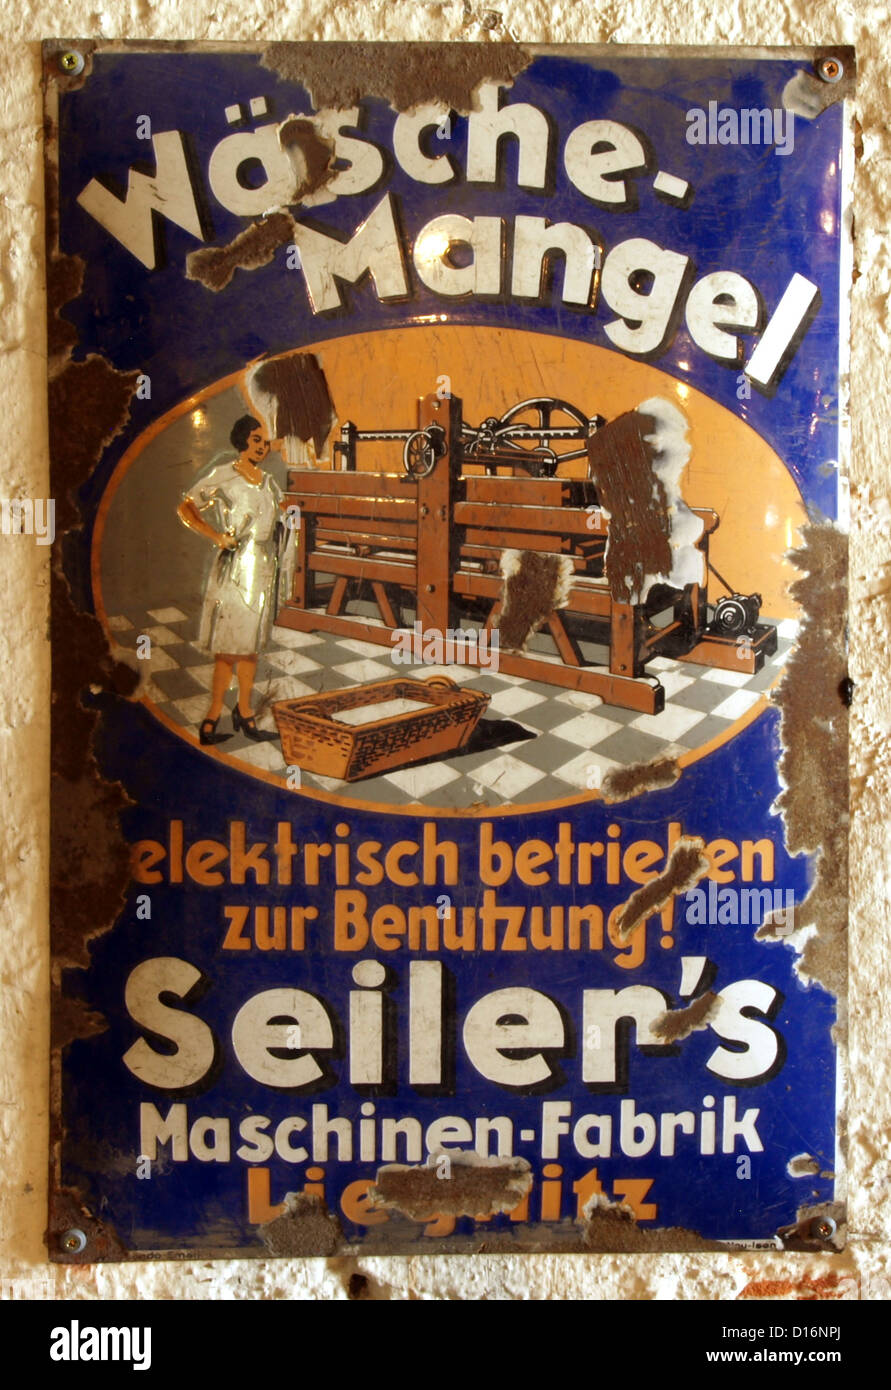 Museum of Industry and Railway in Lower Silesia.Enamel advert: Wäsche-Mangel, elektrisch betrieben zur Benutzung! Seiler's Machi Stock Photo